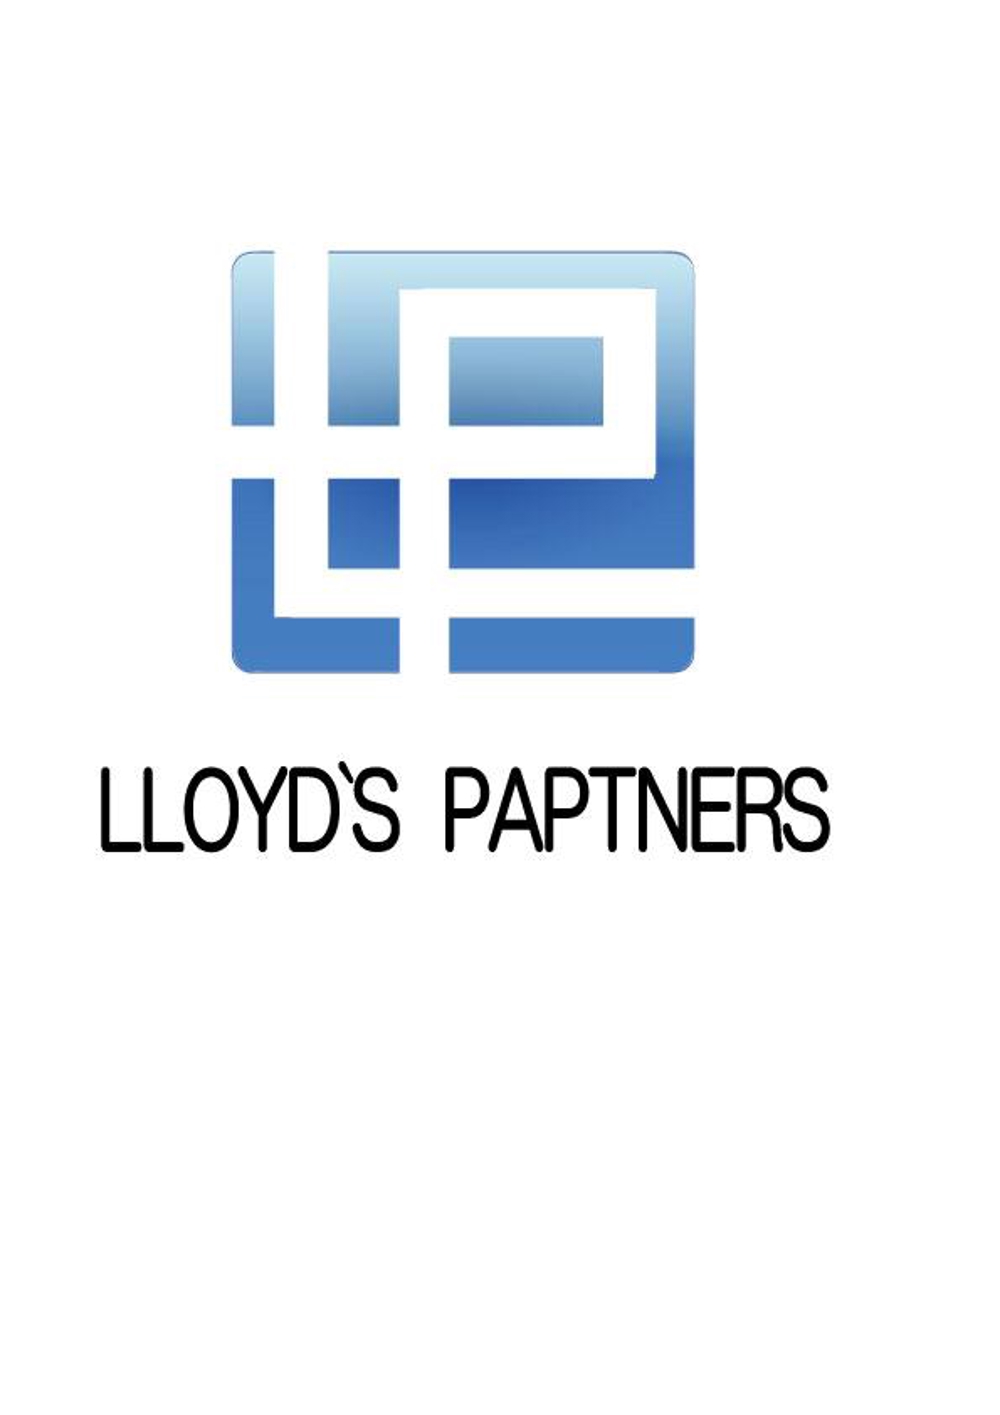 ロイズパートナーズ投資事業有限責任組合のロゴ制作